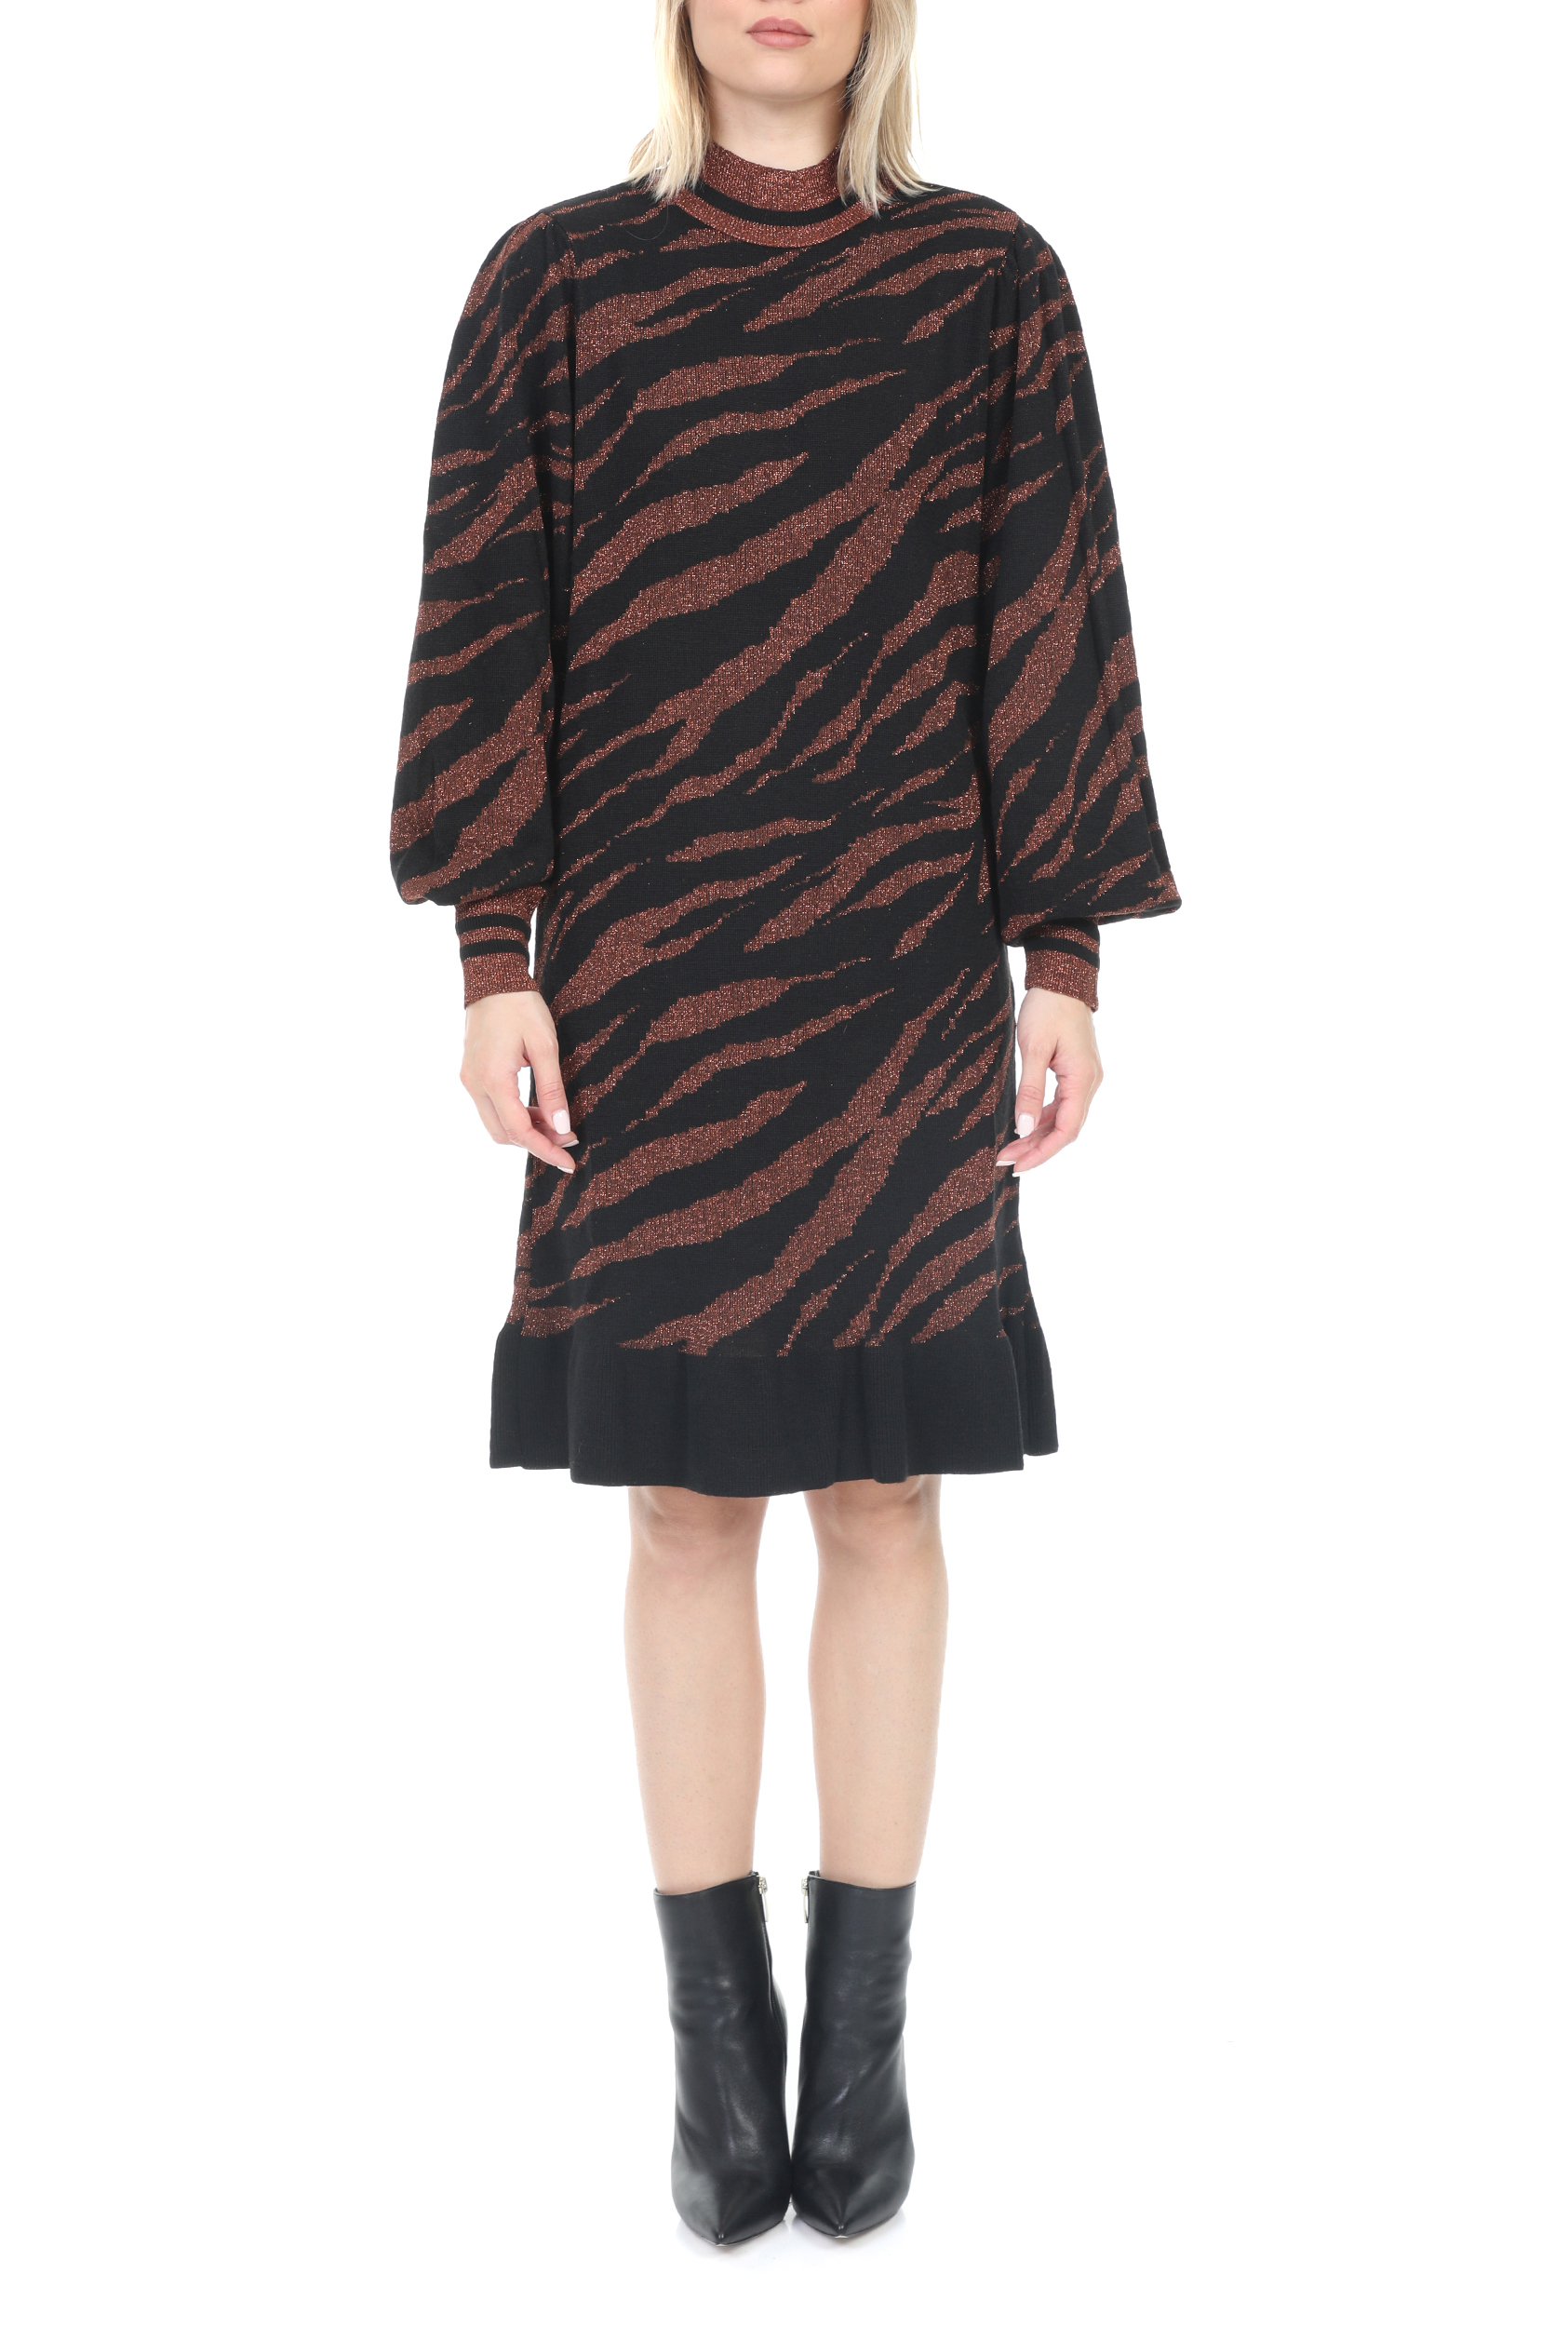 KOCCA – Γυναικείο mini φόρεμα KOCCA GUARDIAN μαύρο καφέ 1802655.0-71K9